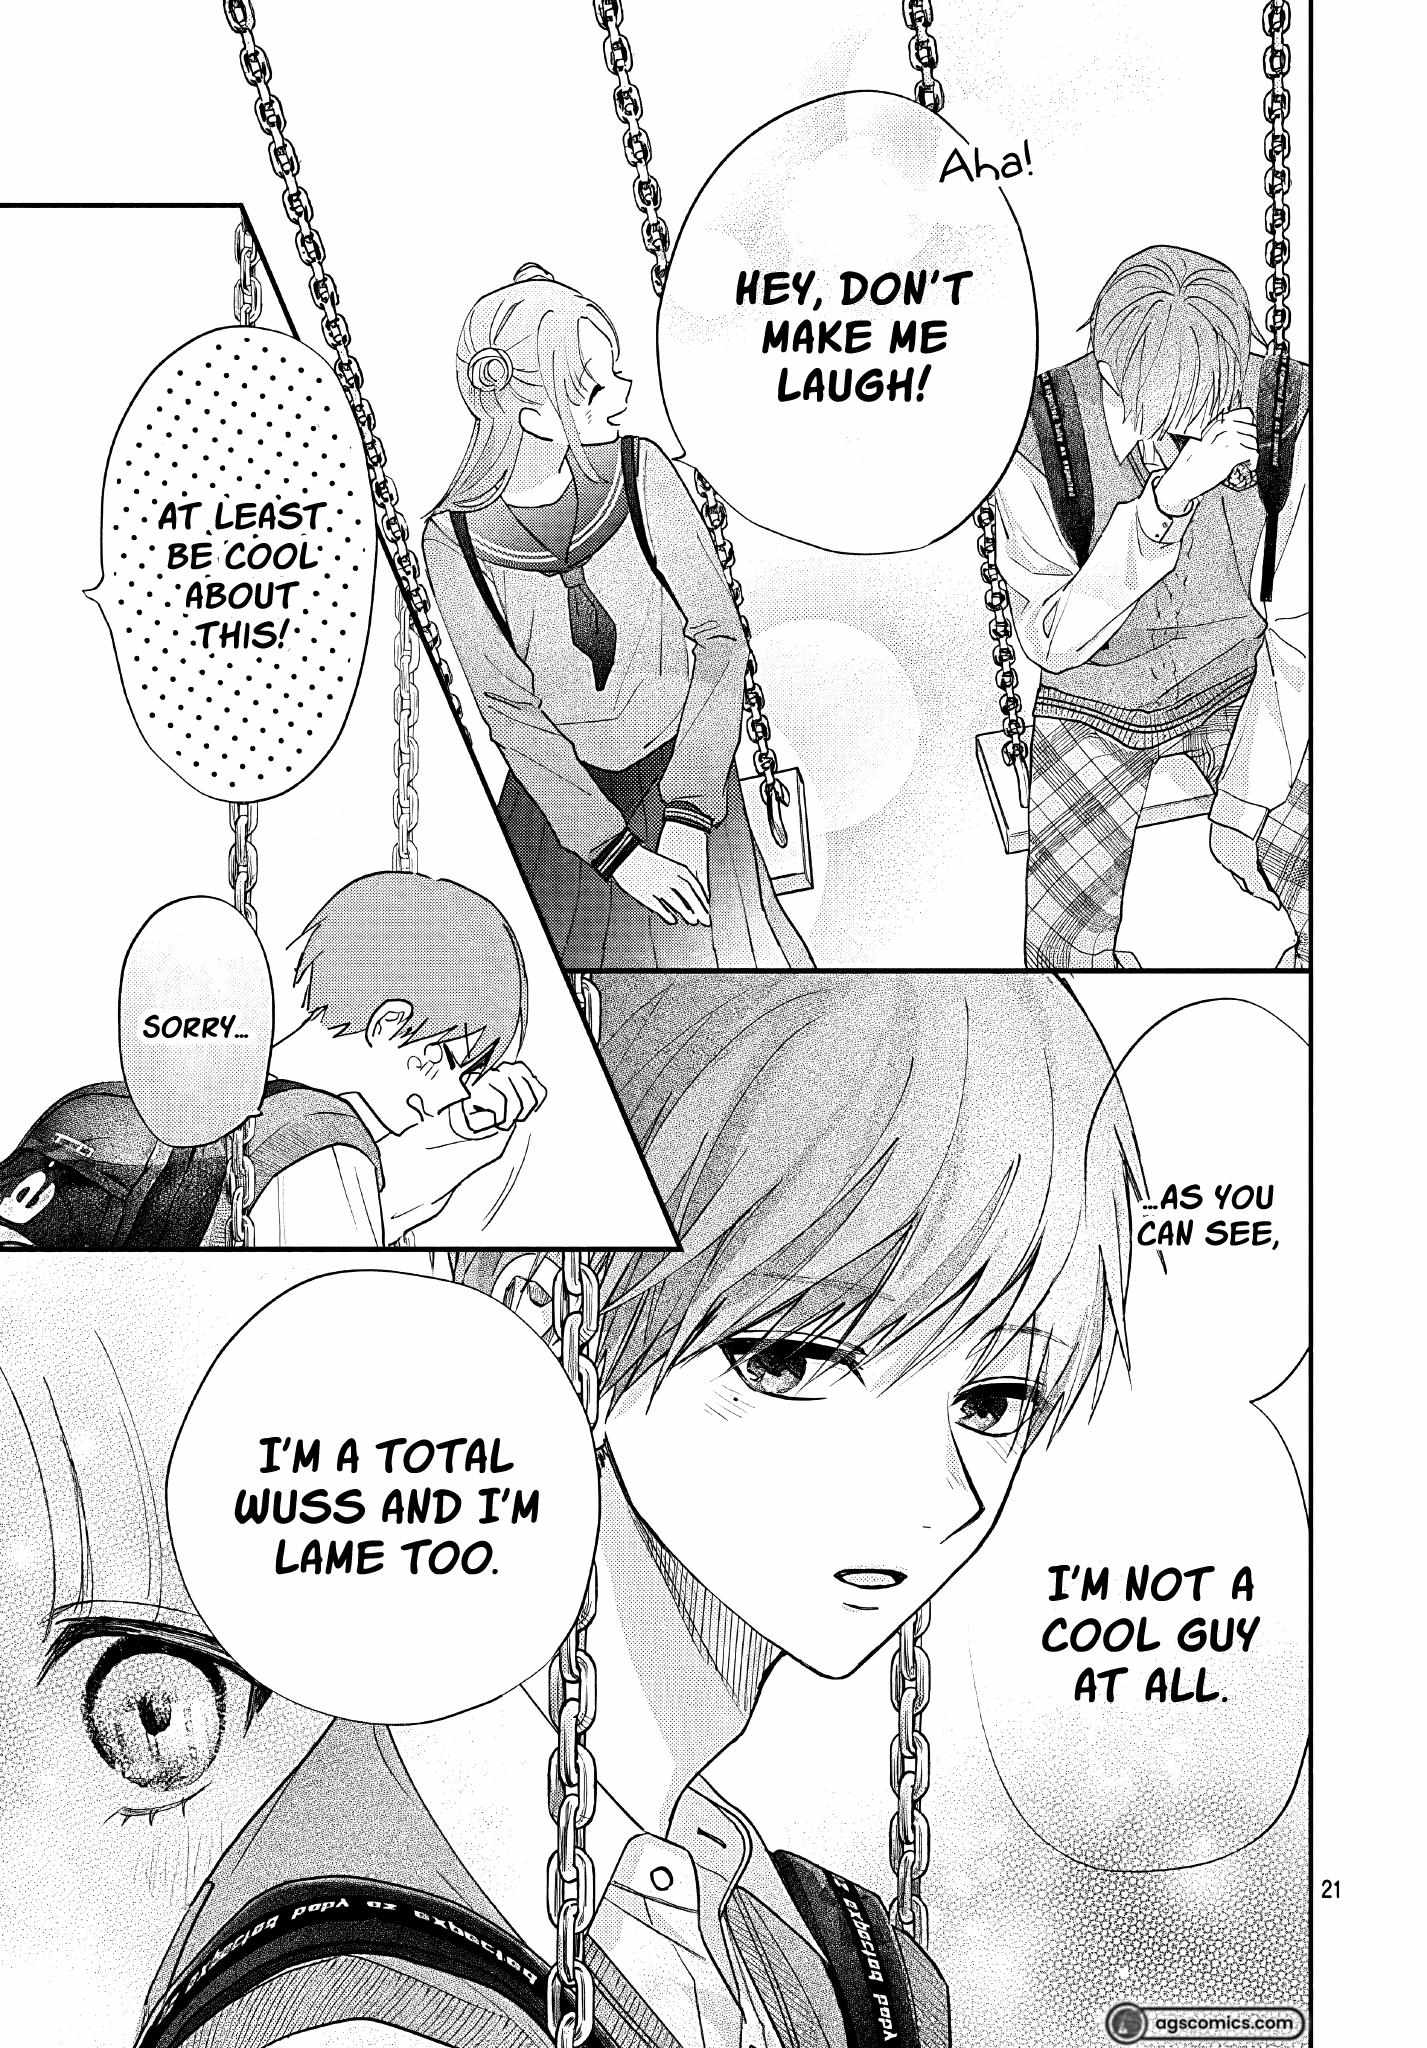 I Hate Komiyama - 11 page 22-8f531f10